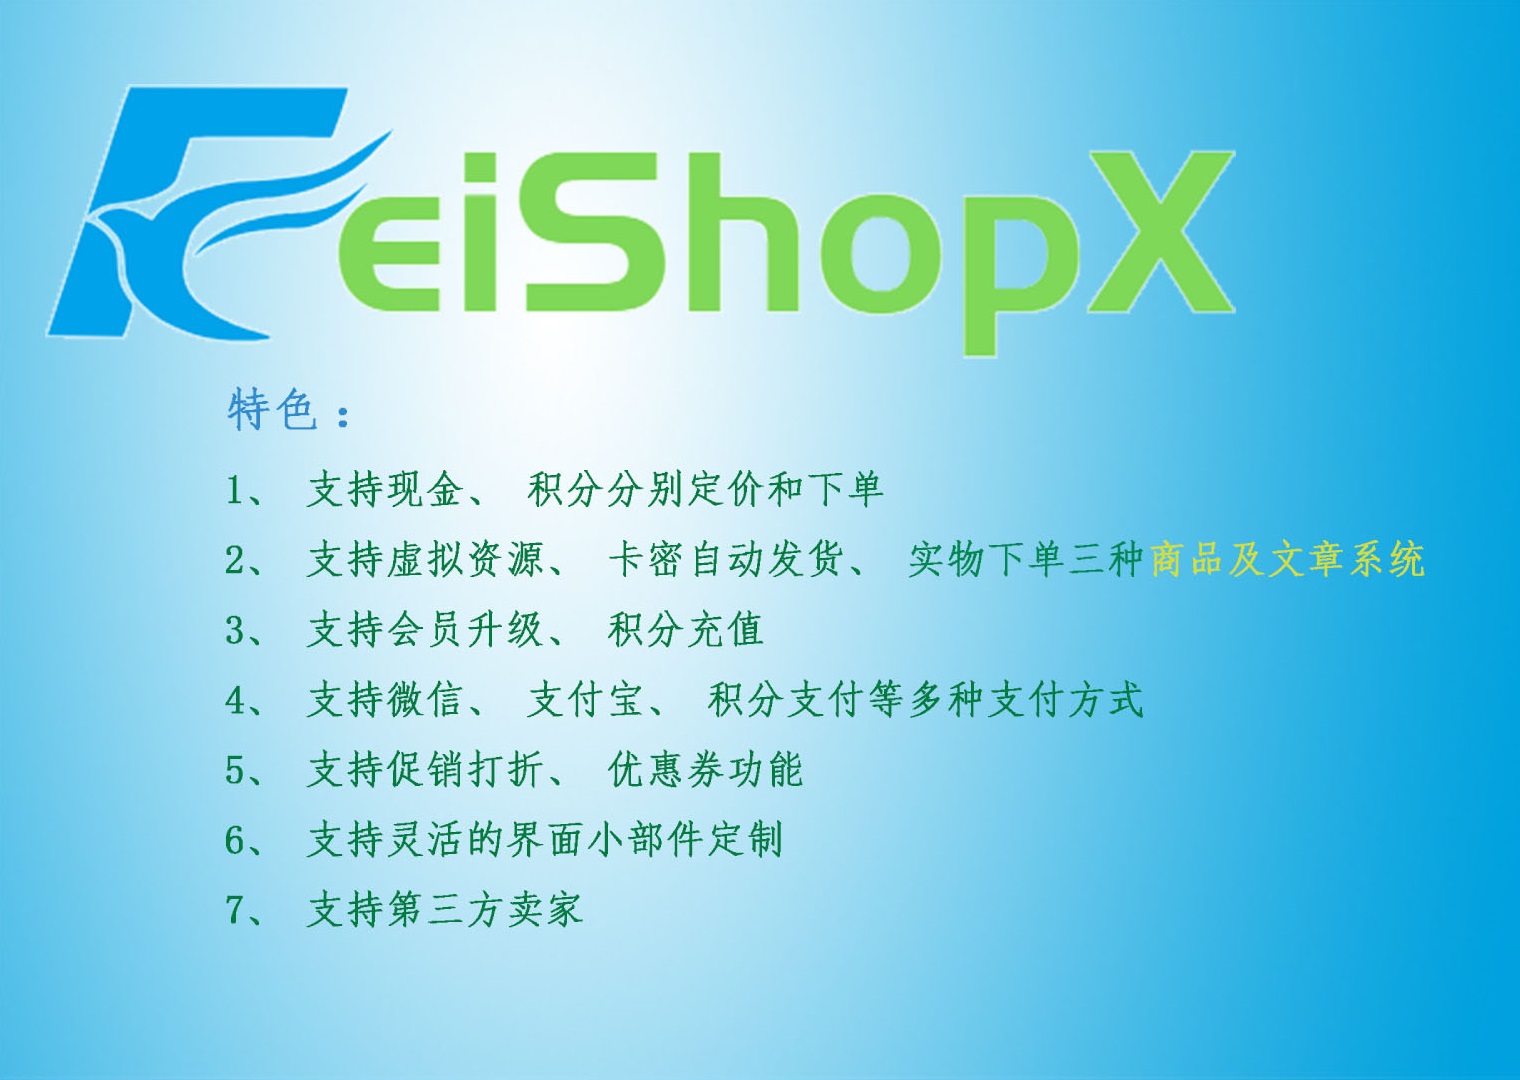 FeishopX虚拟资源商城系统源码免费下载